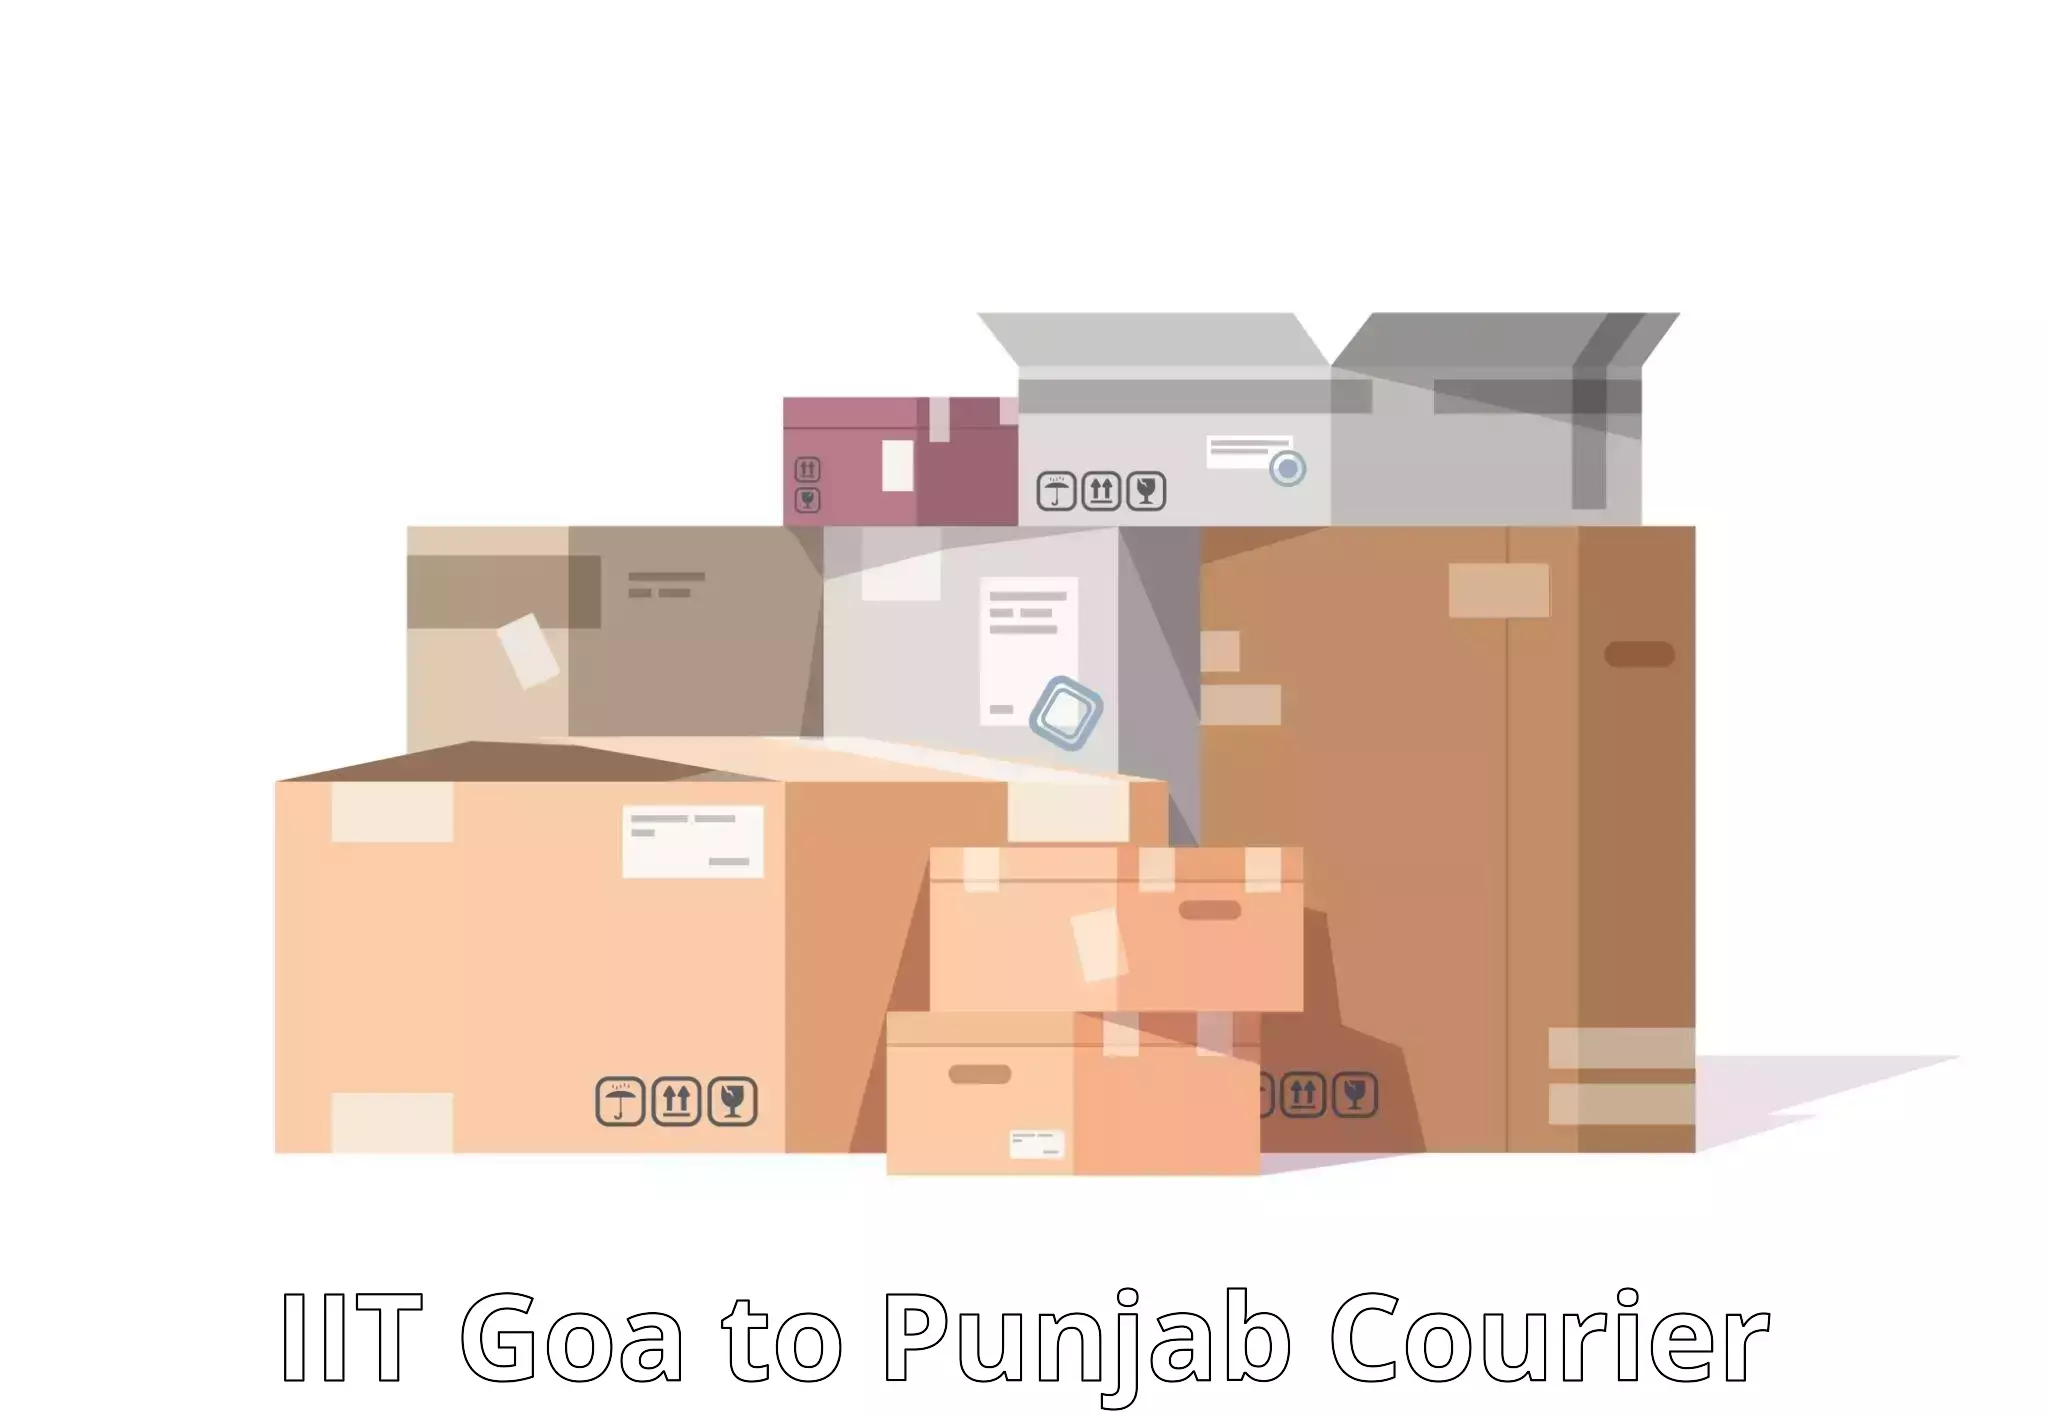 International parcel service IIT Goa to Patti Tarn Tara